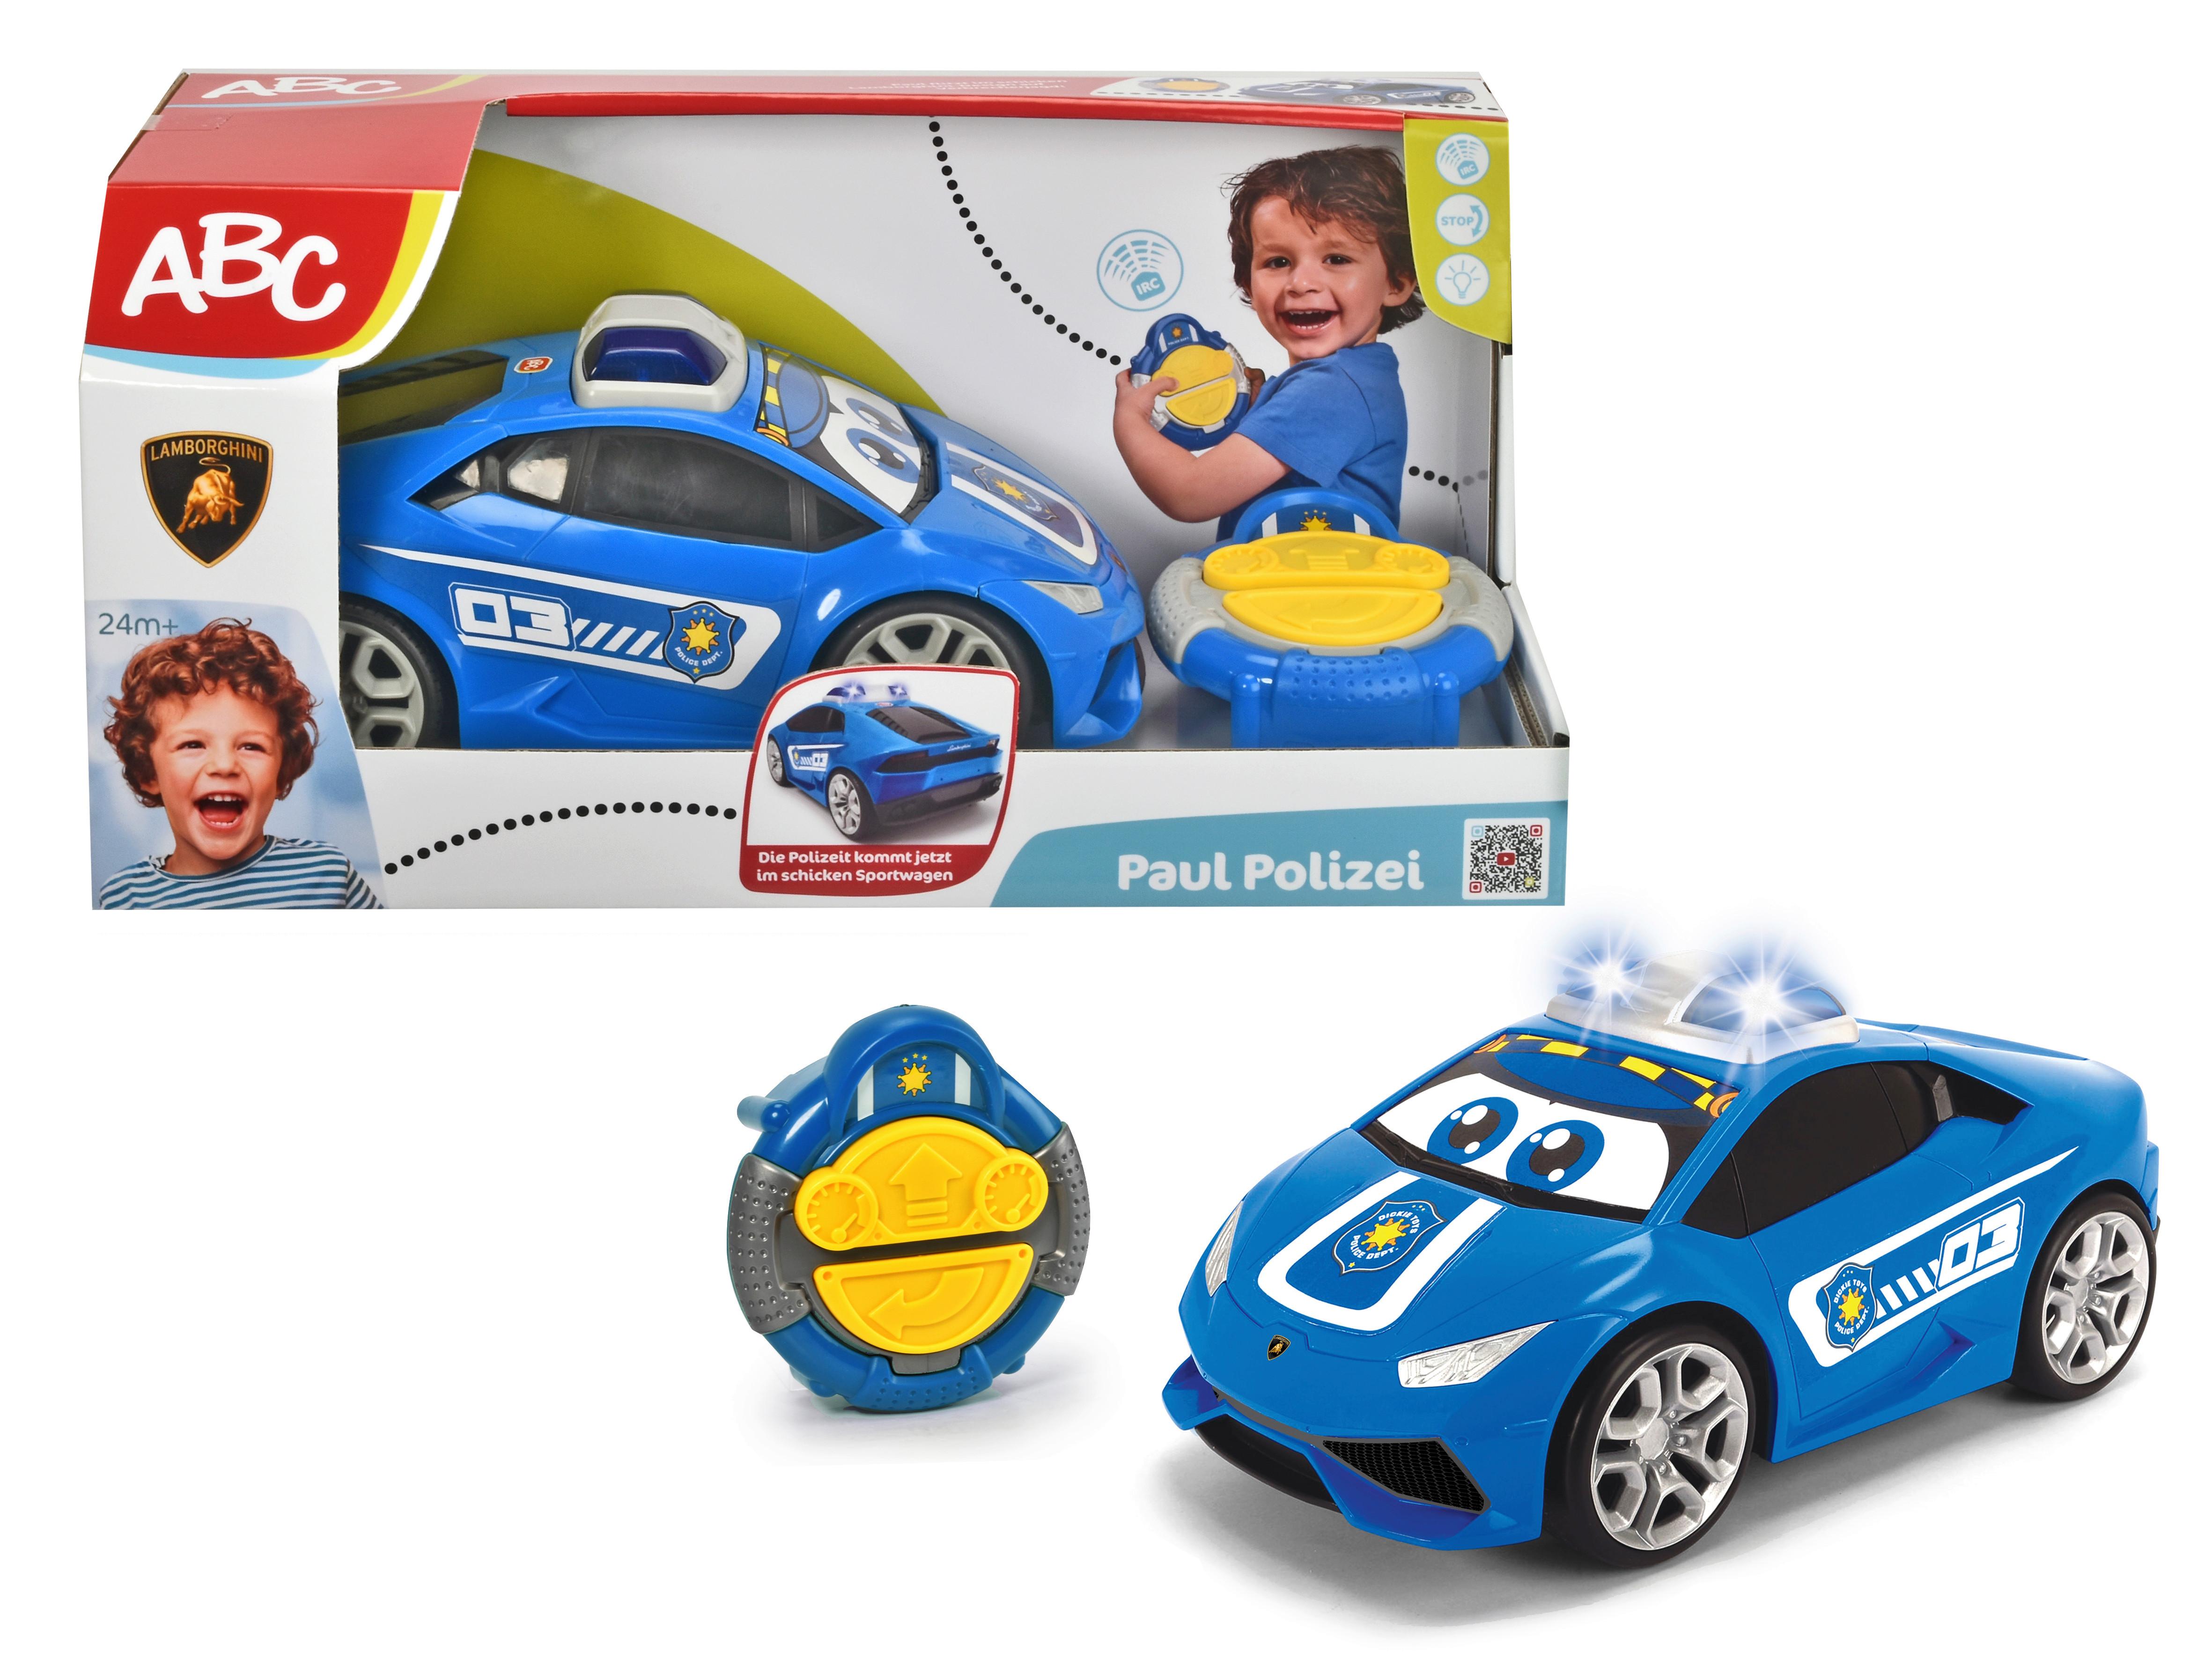 Spielzeugauto Polizei Ab 2 Jahren mit Fernbedienung - Blau/Multicolor, Basics, Kunststoff (17,50/38/18,50cm) - Simba